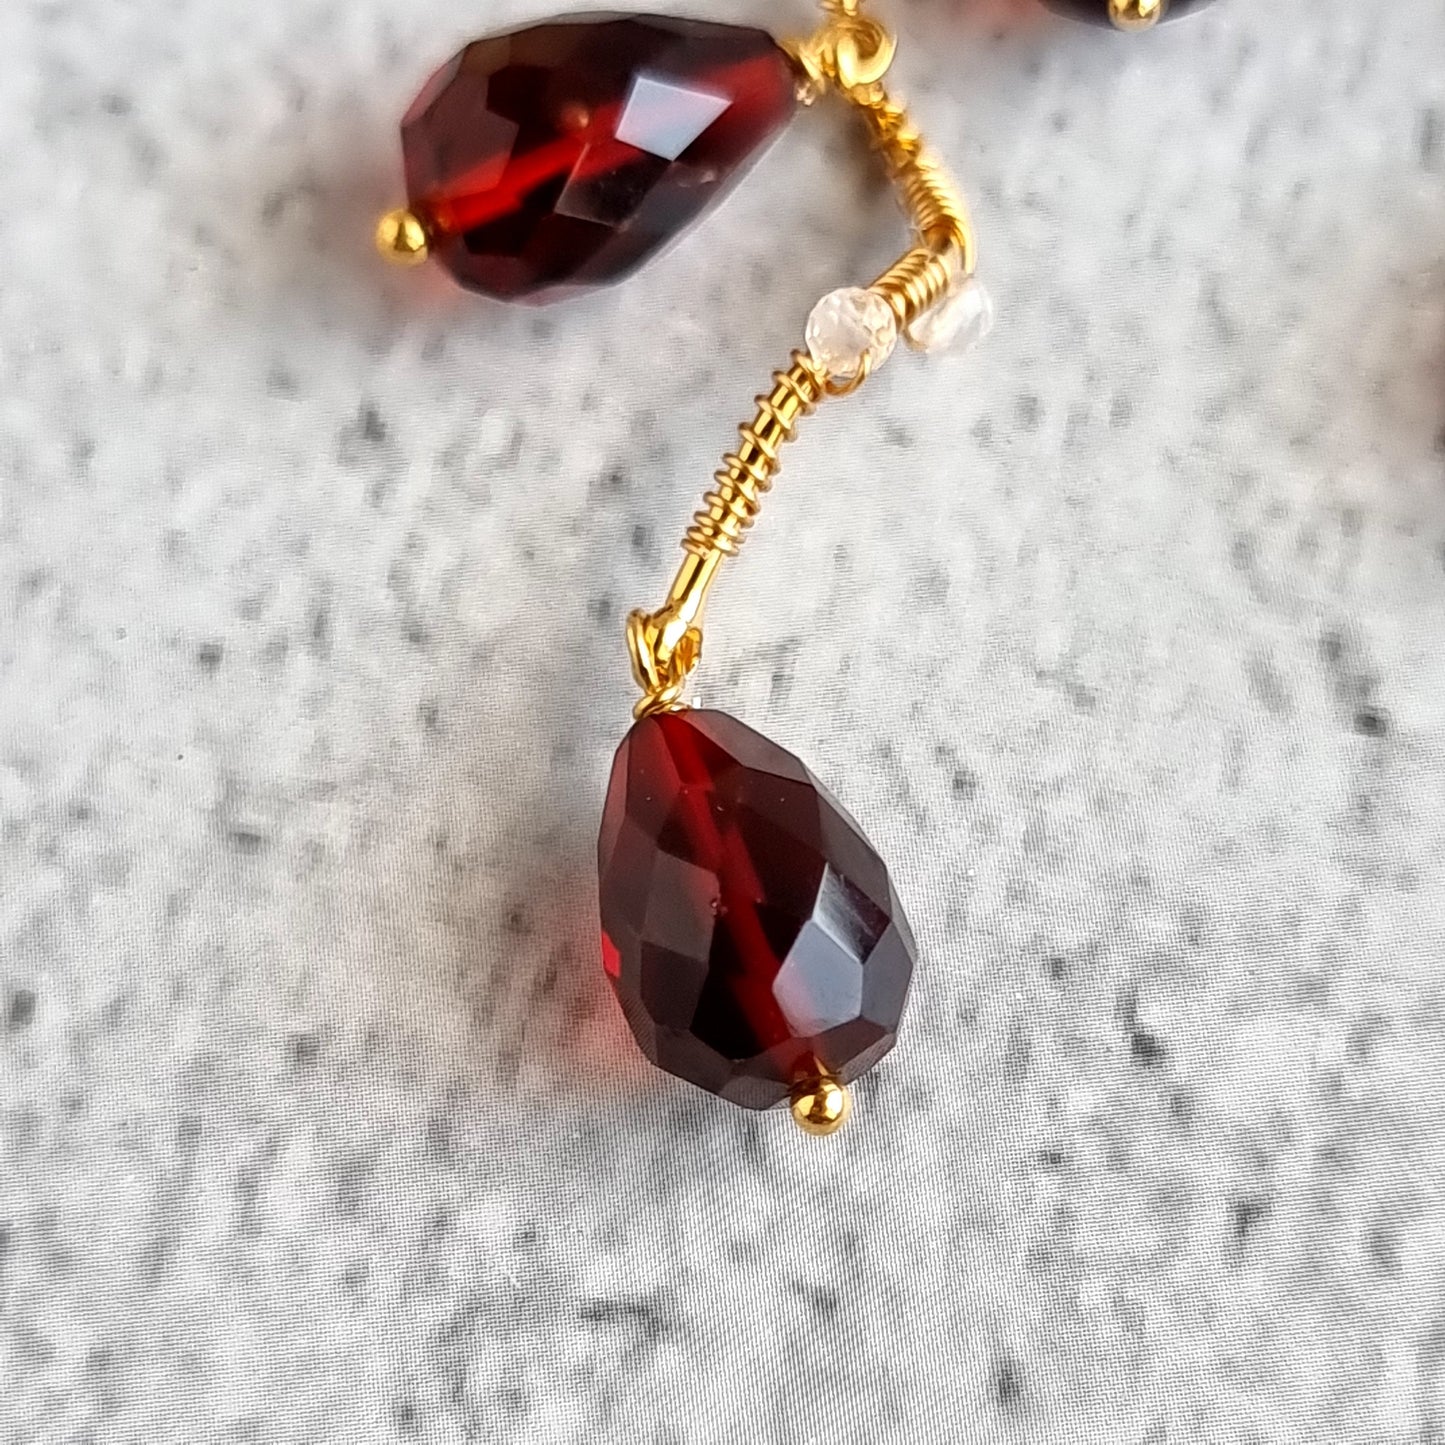 Vine Gemstone Earrings - Red Hydro Quartz with Rose Quartz